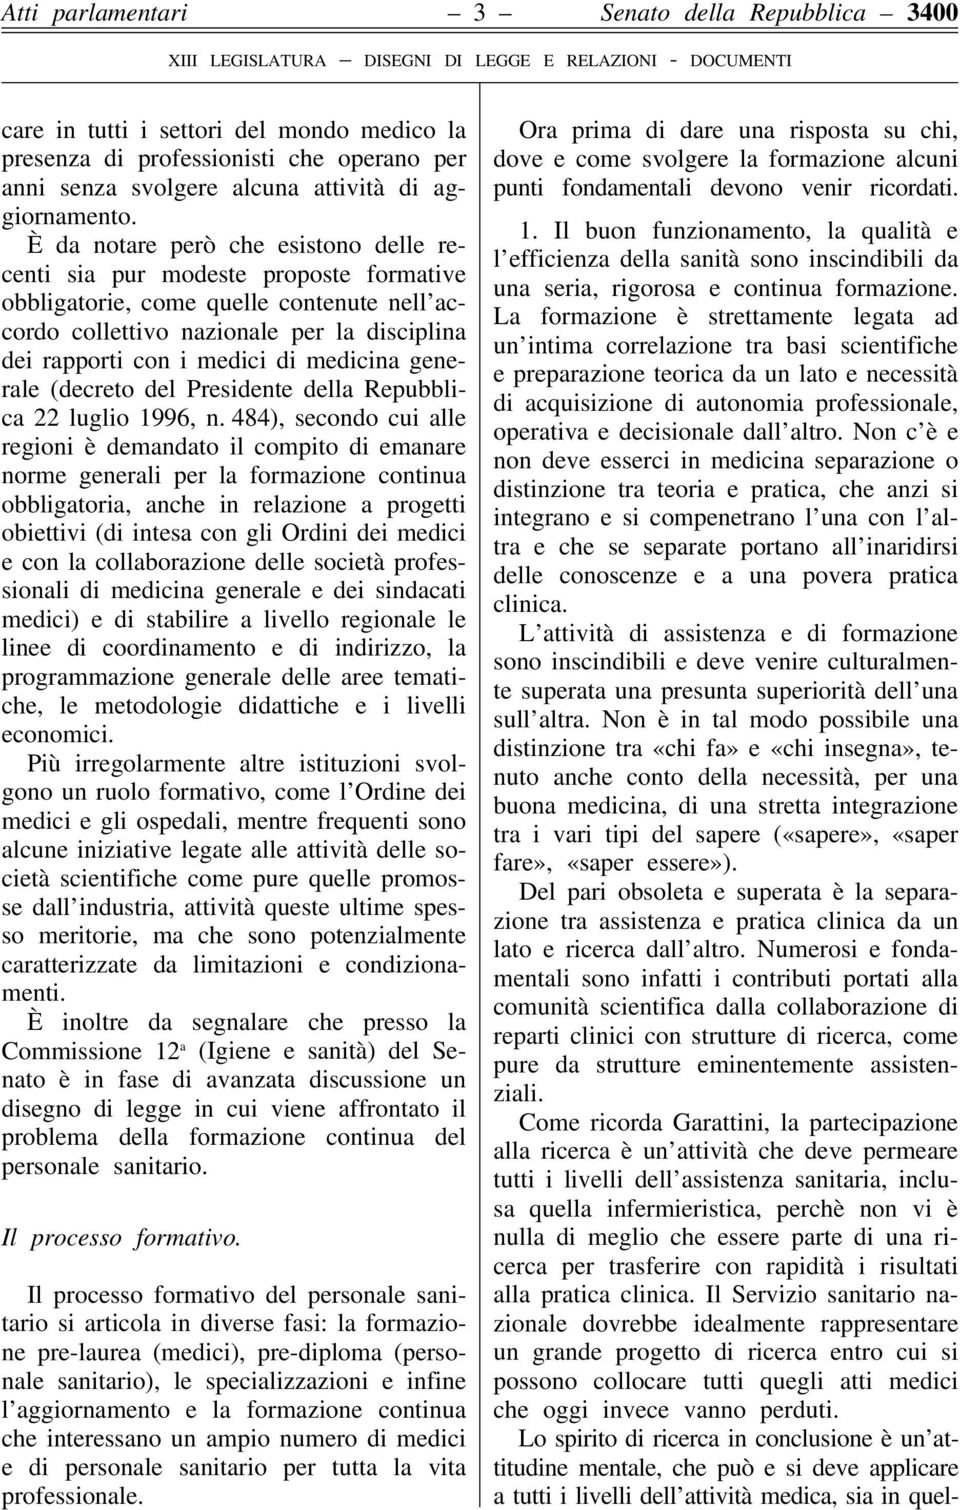 medicina generale (decreto del Presidente della Repubblica 22 luglio 1996, n.